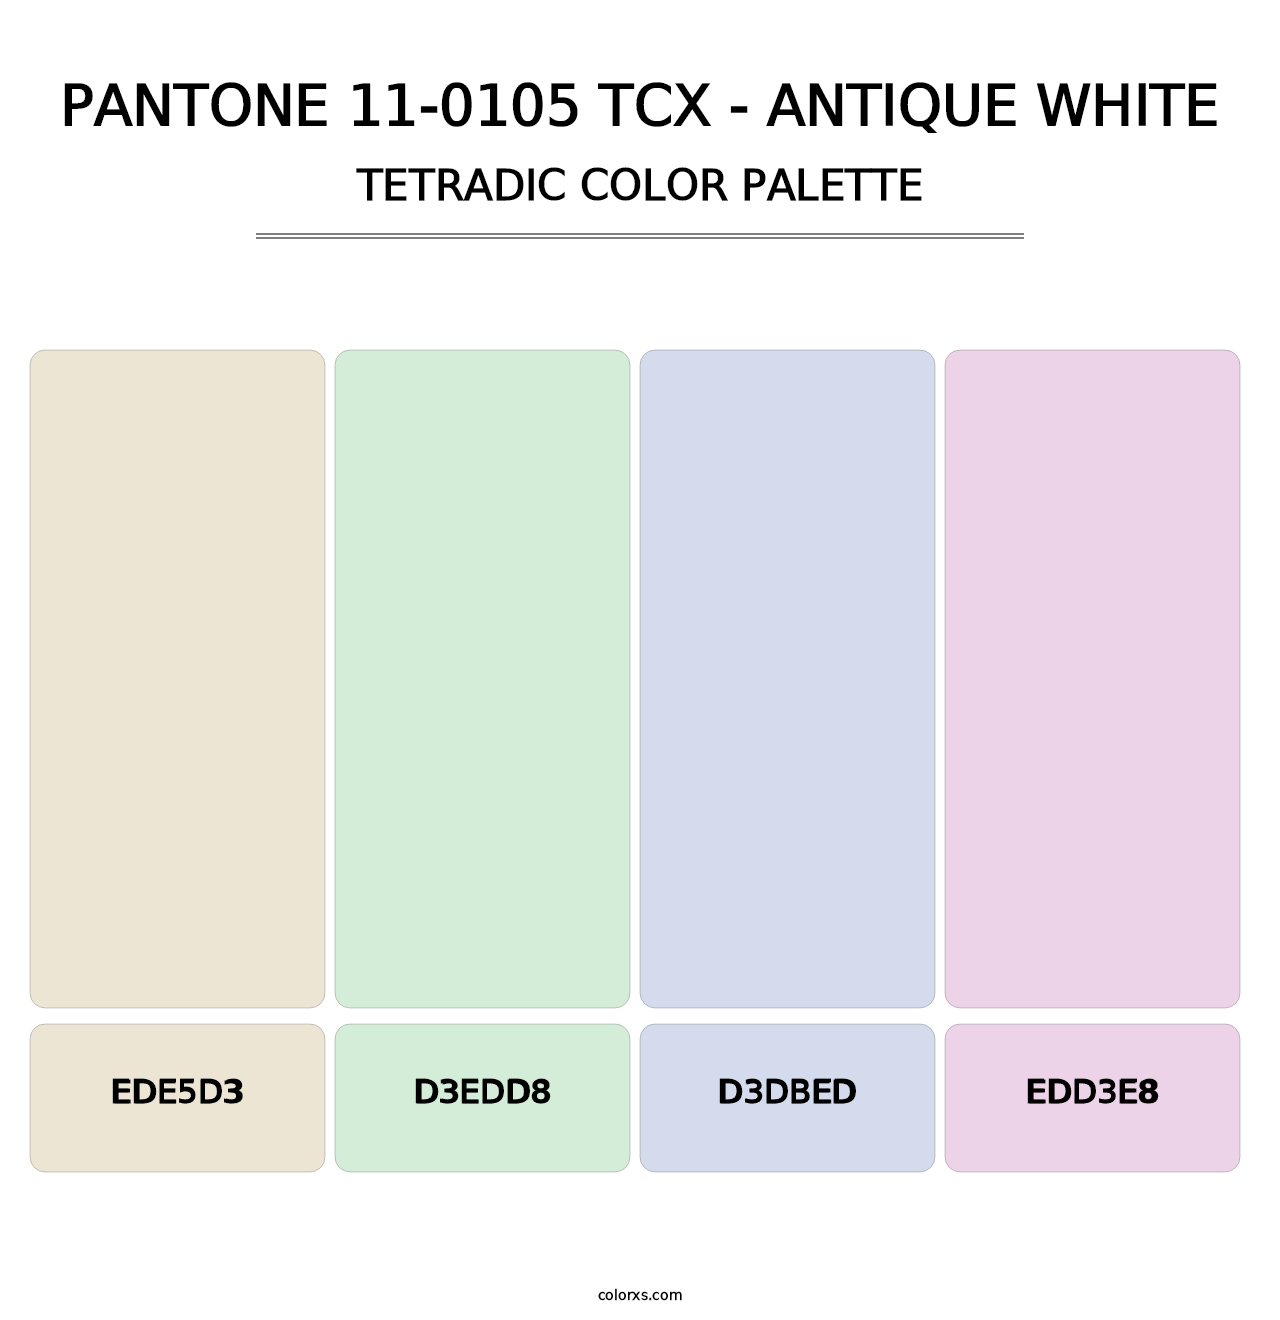 PANTONE 11-0105 TCX - Antique White - Tetradic Color Palette